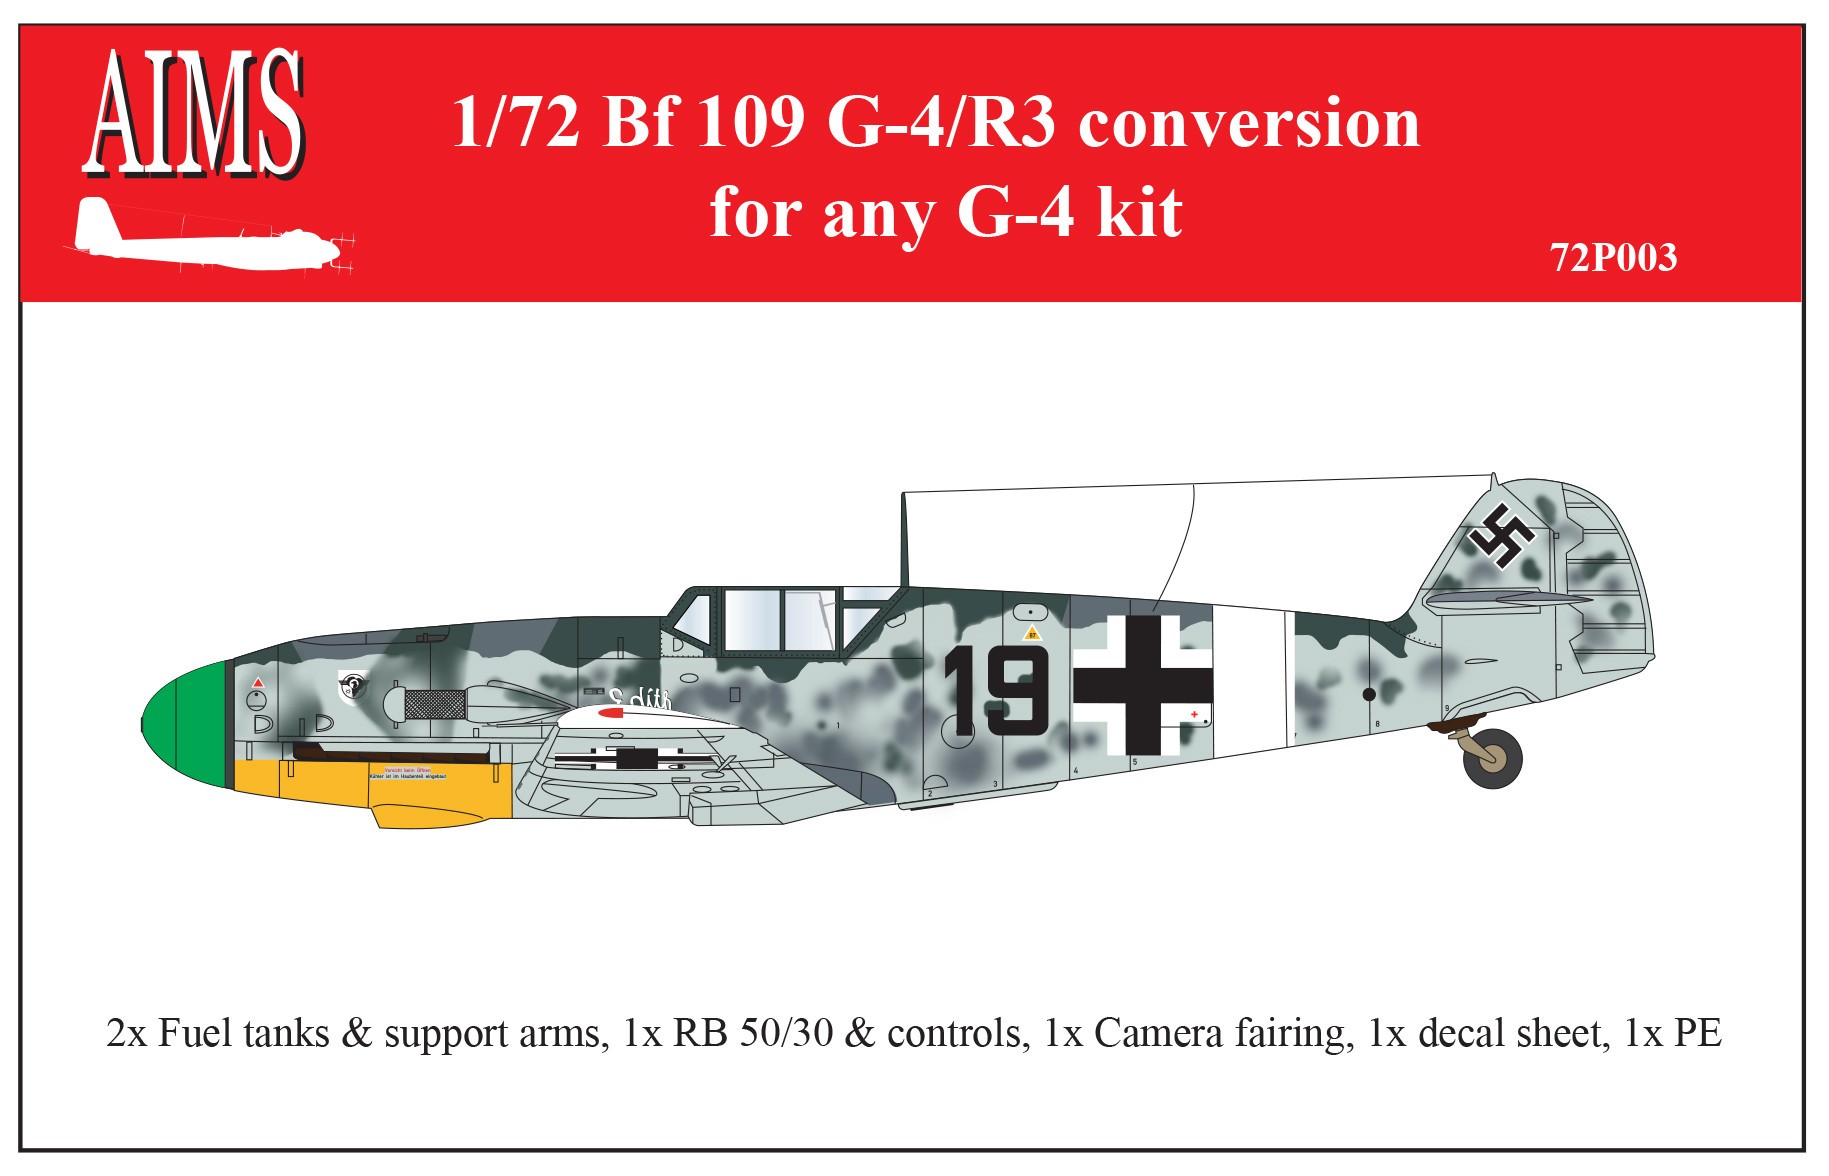  Aims Conversion Messerschmitt Bf-109G-4 / R3 (conçu pour être utilisé